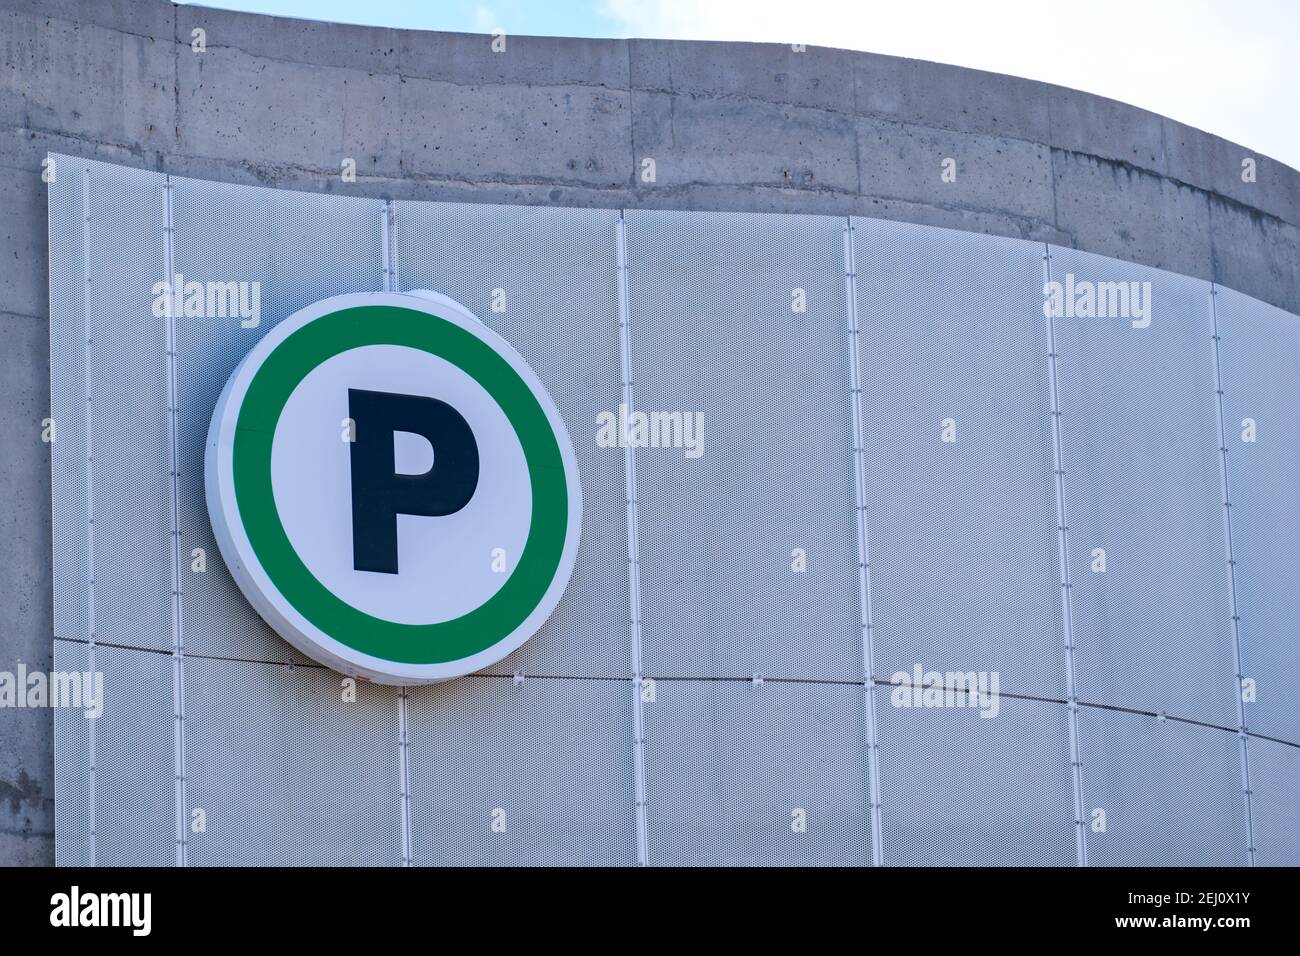 Un cartello con la scritta "P" indica il parcheggio pubblico dove è appeso al muro di un garage in cemento. Foto Stock